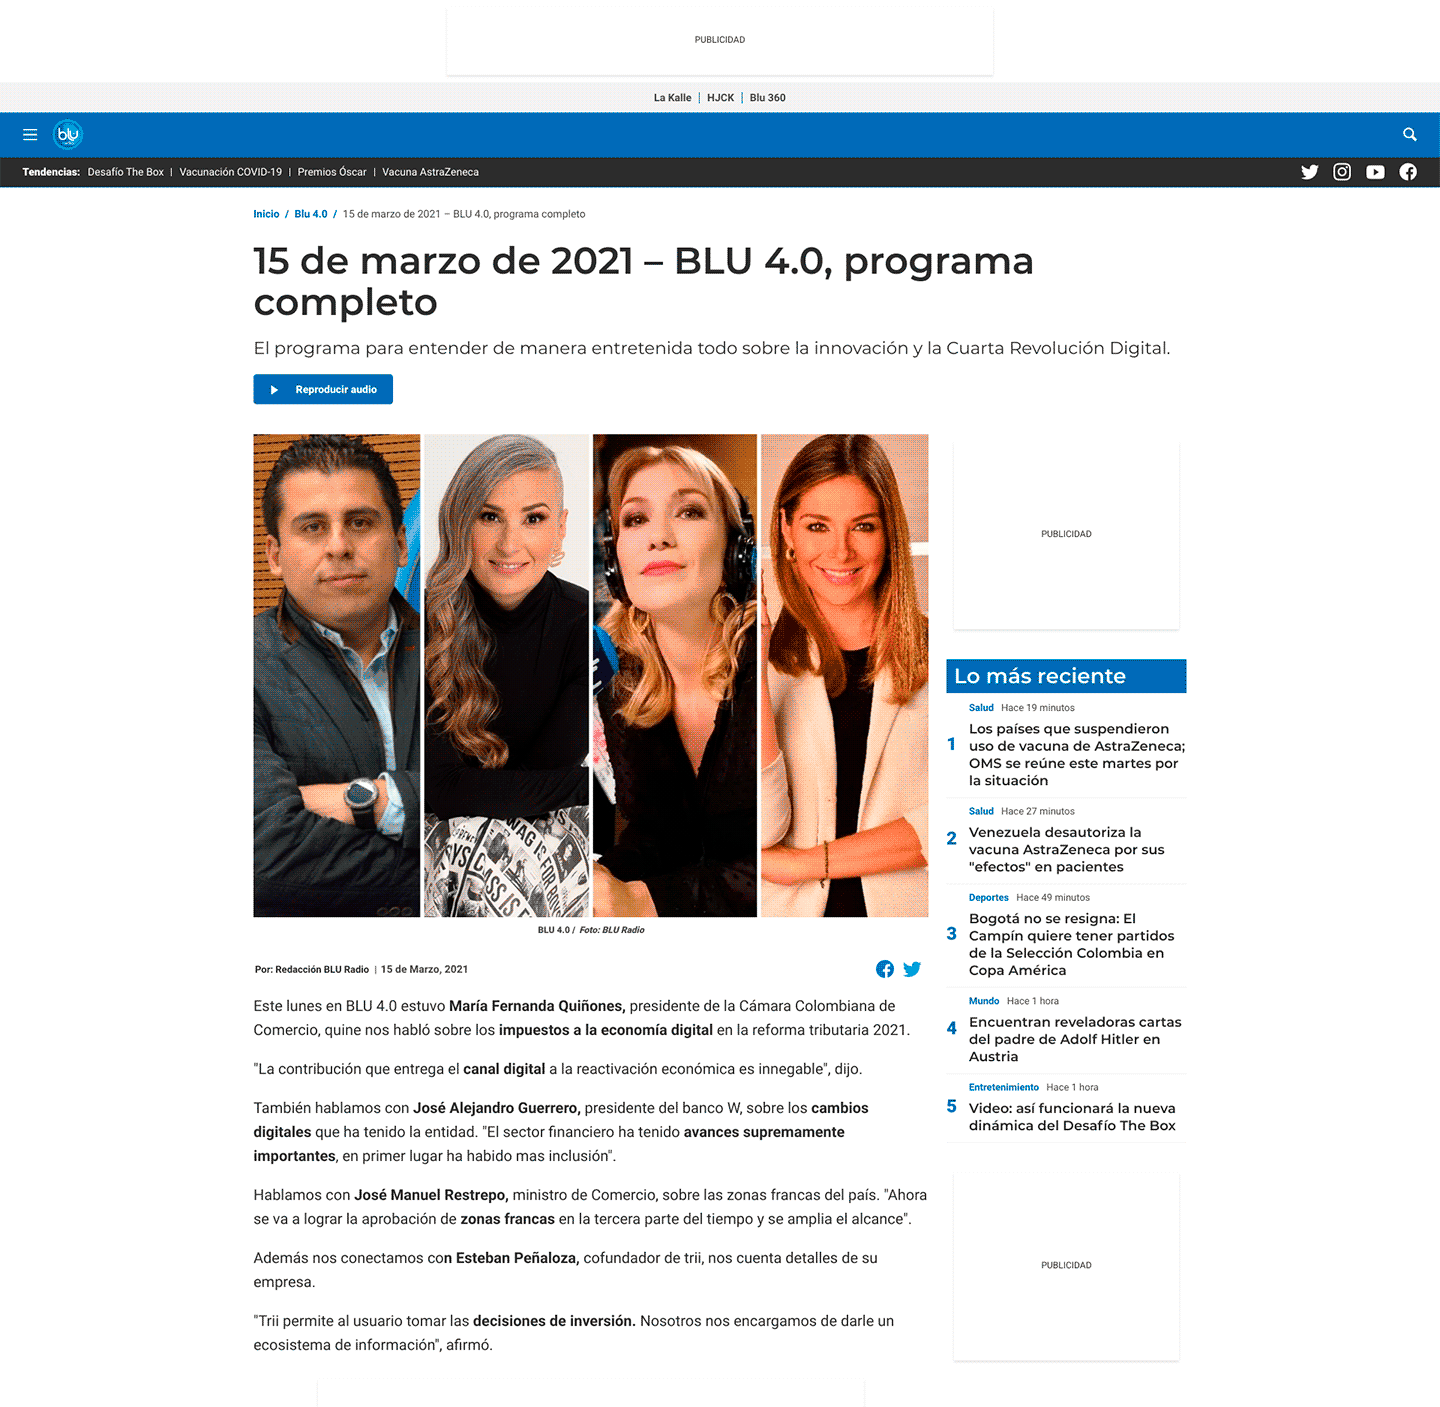 Programa Blu 4.0 del 15 de marzo que tuvo como invitado especial al Presidente Banco W.